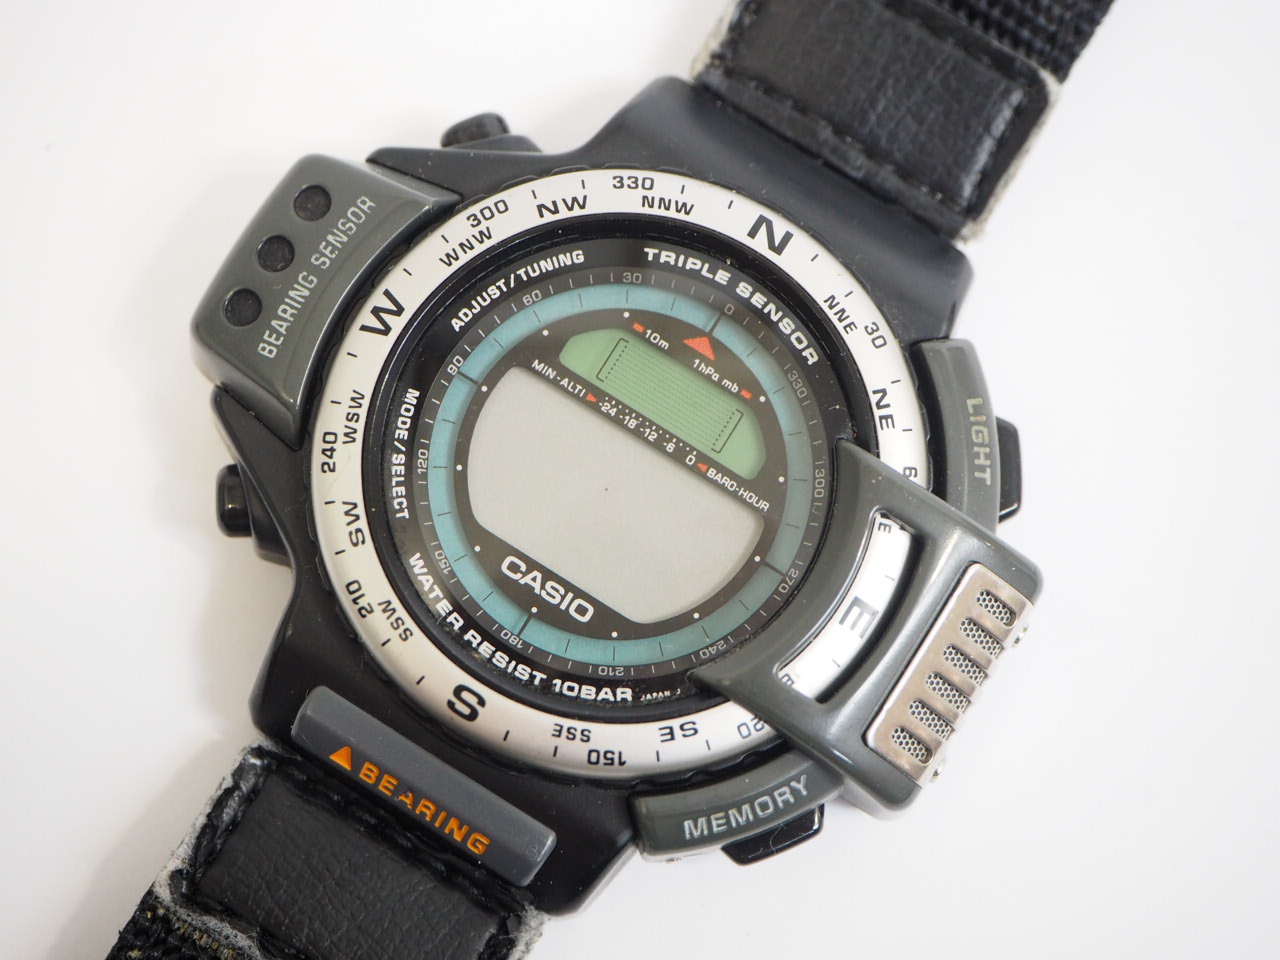 CASIO/カシオ TRIPLE SENSOR/トリプルセンサー PRO TRECK/プロトレック ATC-1100 腕時計